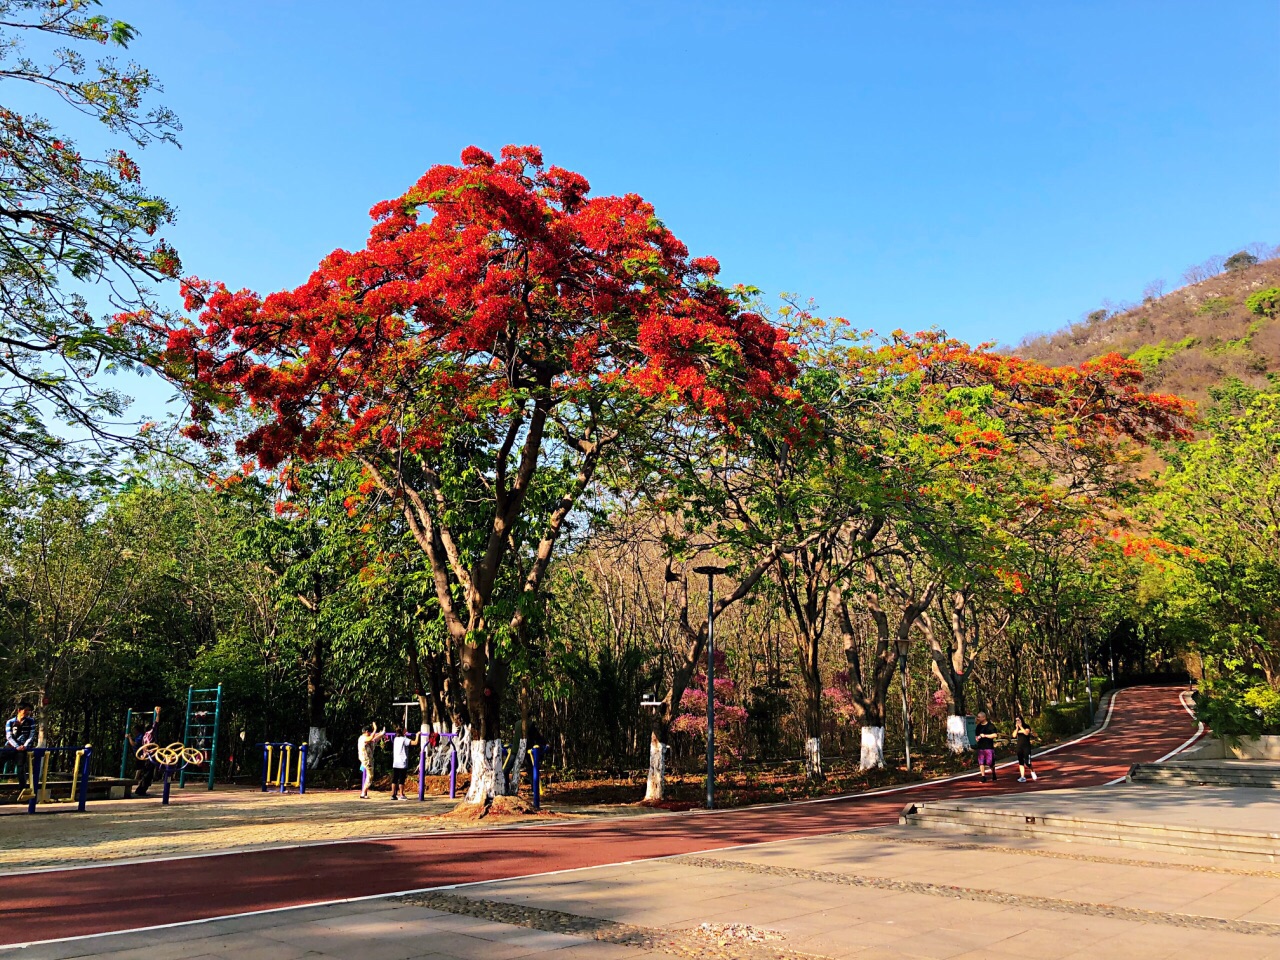 攀枝花公园位于市中心,也是城市中心的一块绿肺,每天在这里晨练的人